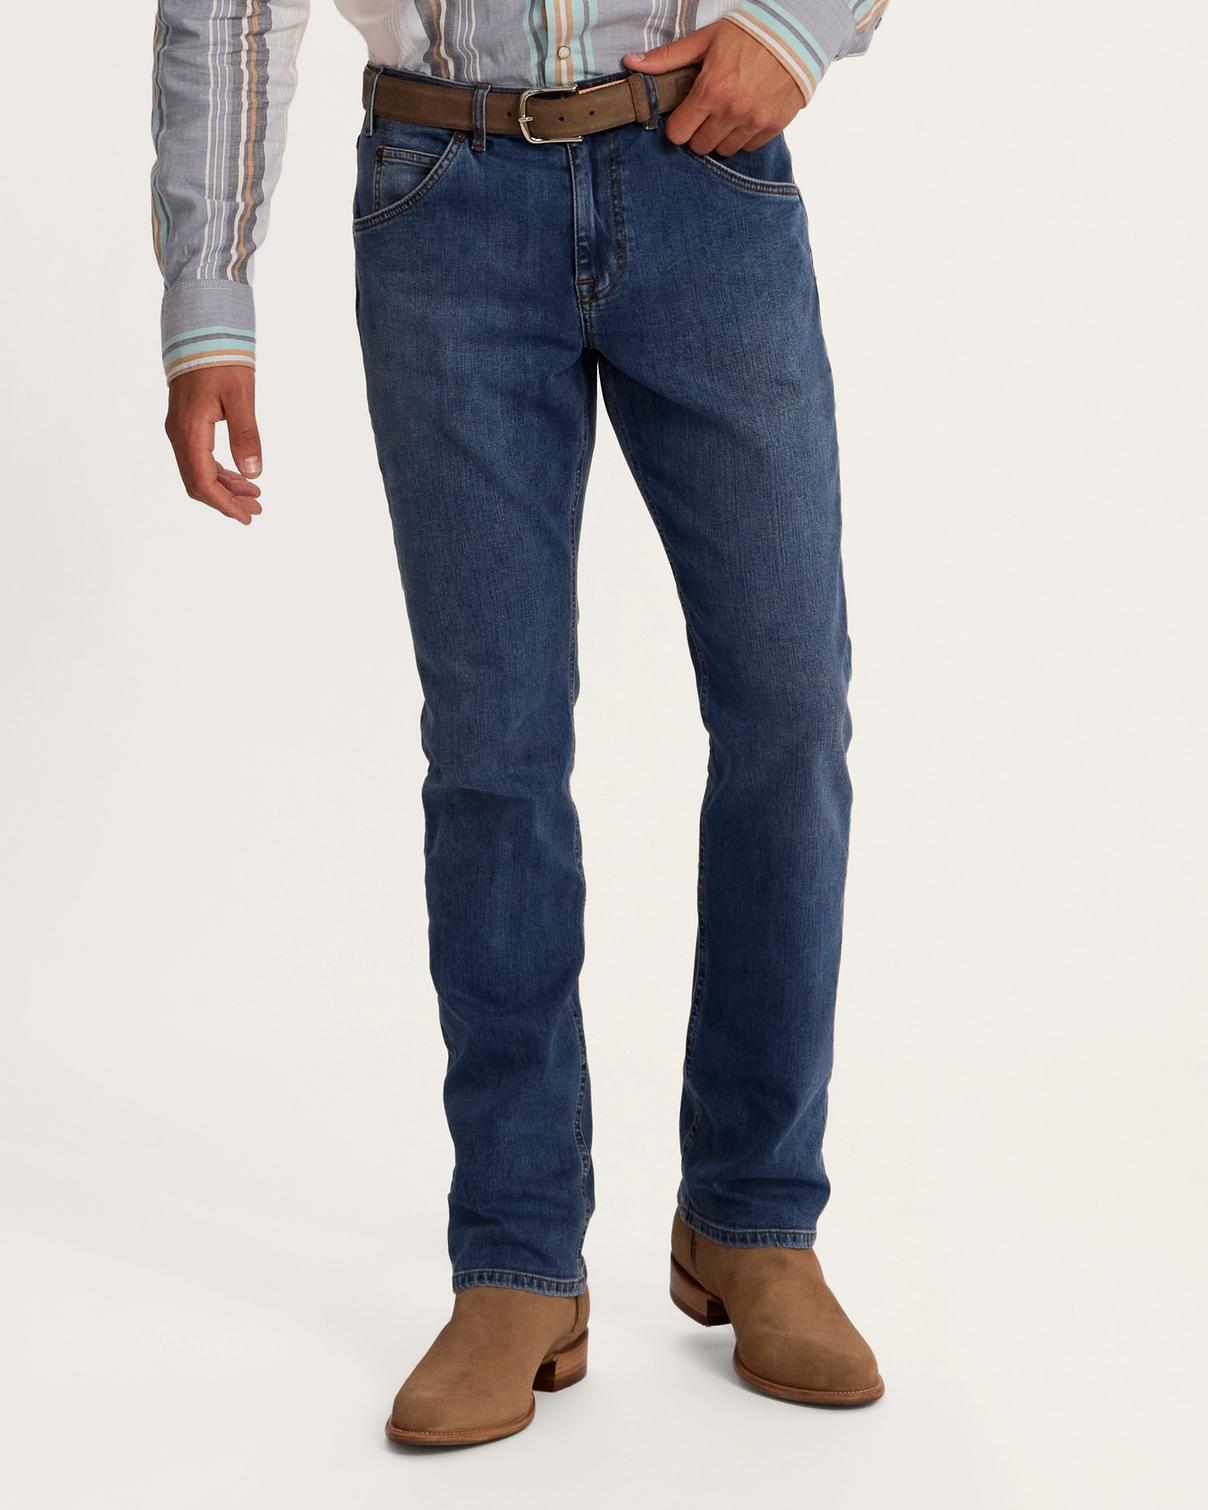 Cowboy Jeans, Premium Western Jeans for Men